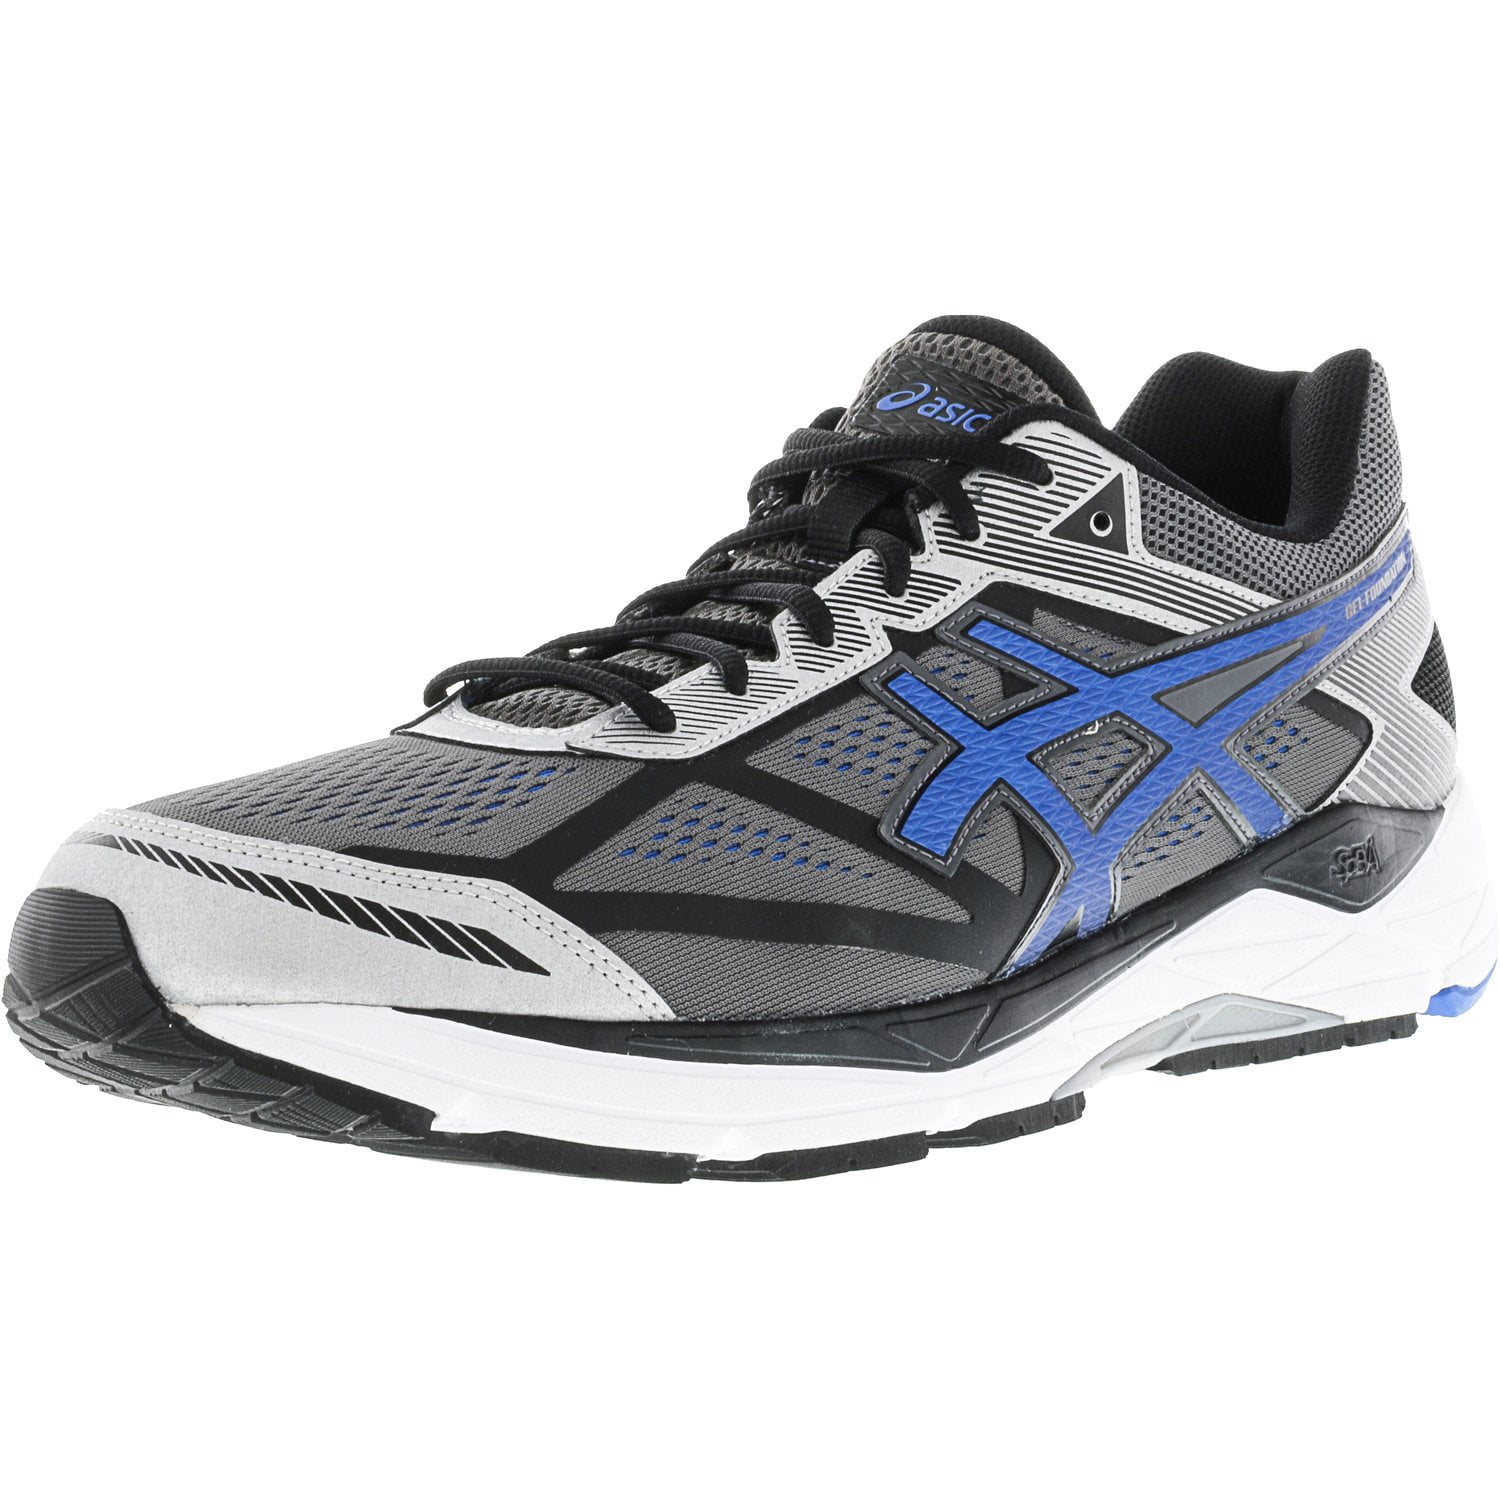 Men's Gel-Foundation 12 Carbon / Electric Blue Black Ankle-High Running Shoe - 10M - Walmart.com